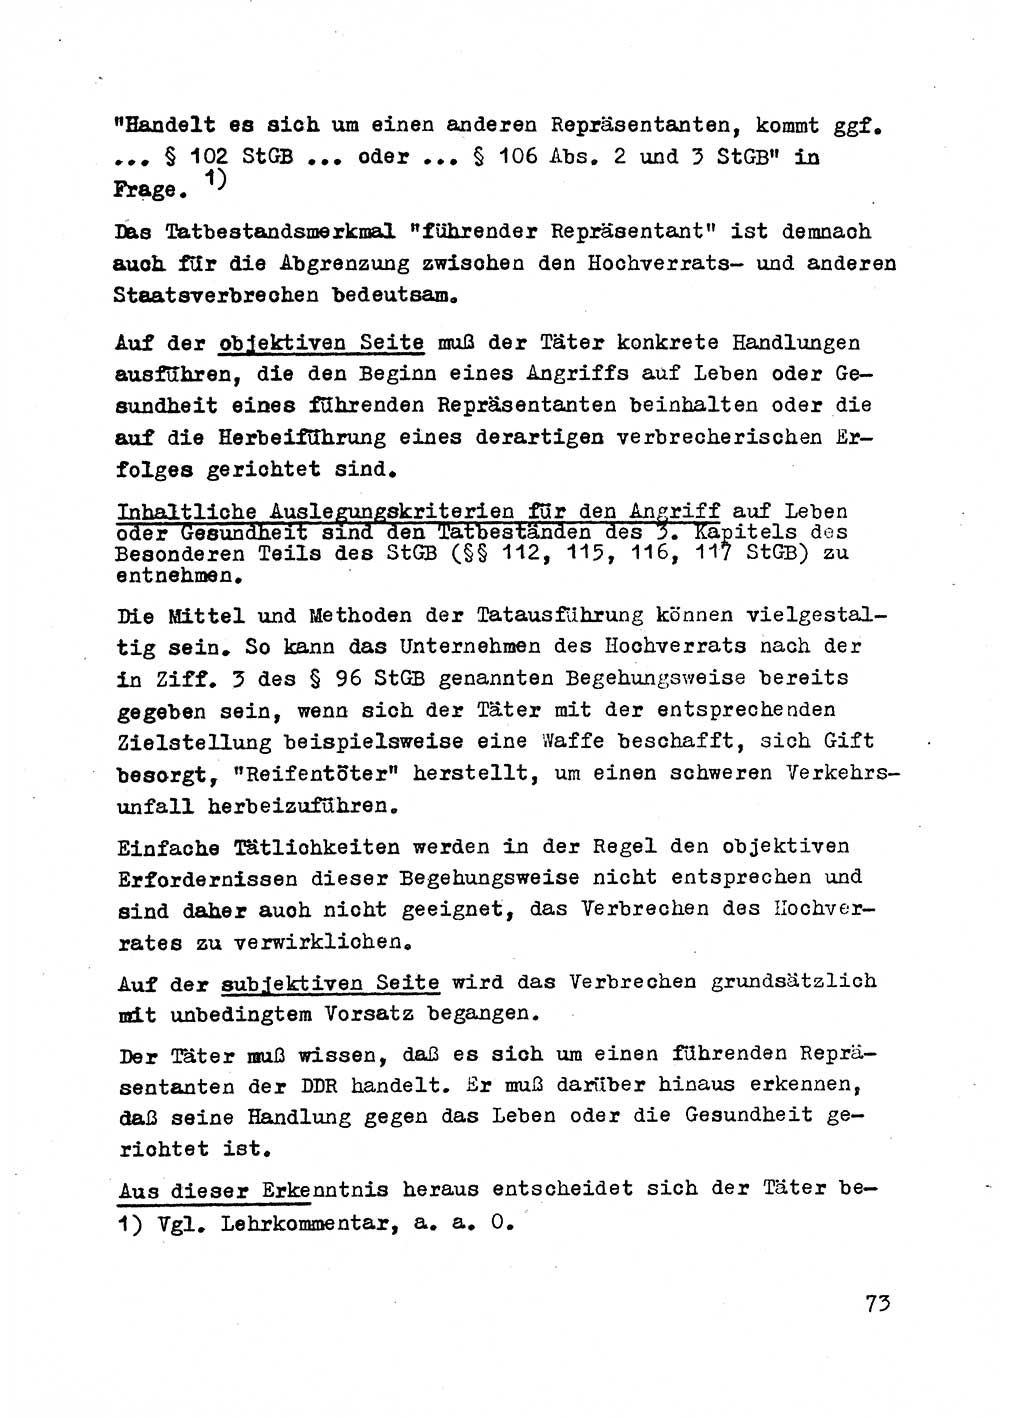 Strafrecht der DDR (Deutsche Demokratische Republik), Besonderer Teil, Lehrmaterial, Heft 2 1969, Seite 73 (Strafr. DDR BT Lehrmat. H. 2 1969, S. 73)